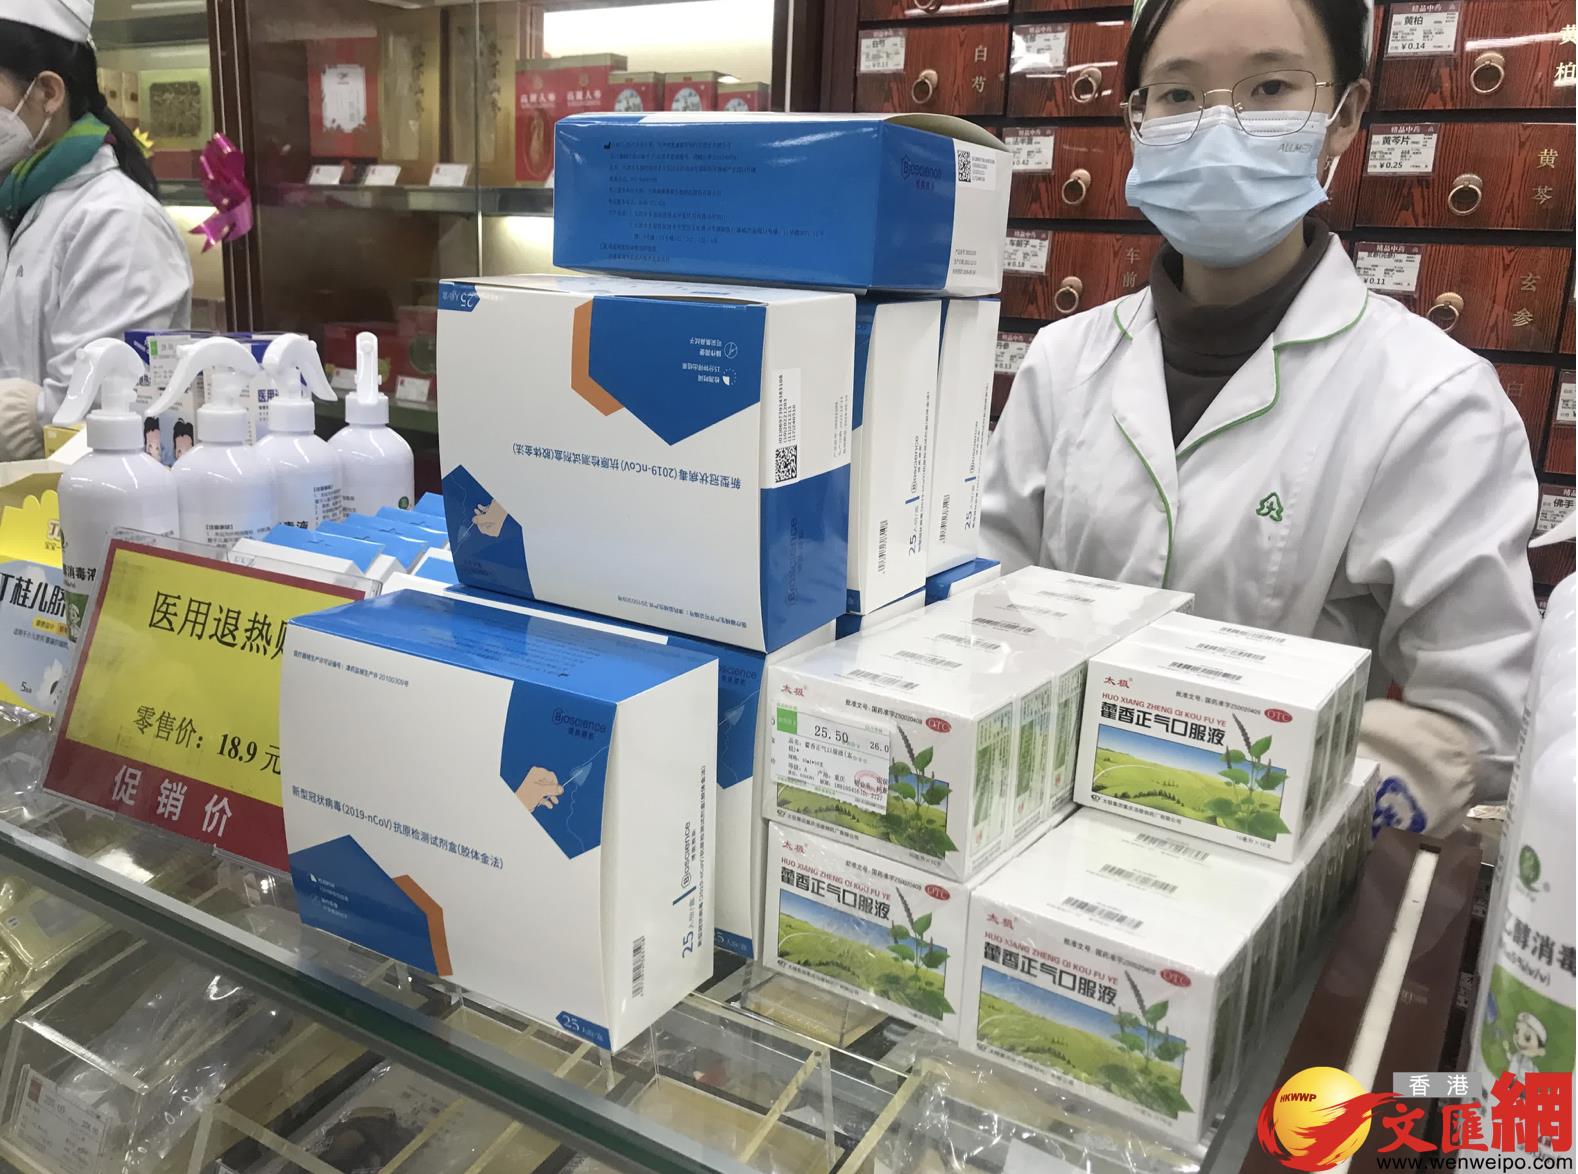 目前广州药店的快筛剂盒、N95口罩供应已得到缓解，但退烧药、抗流感药物仍十分紧缺。（取自香港文汇网）